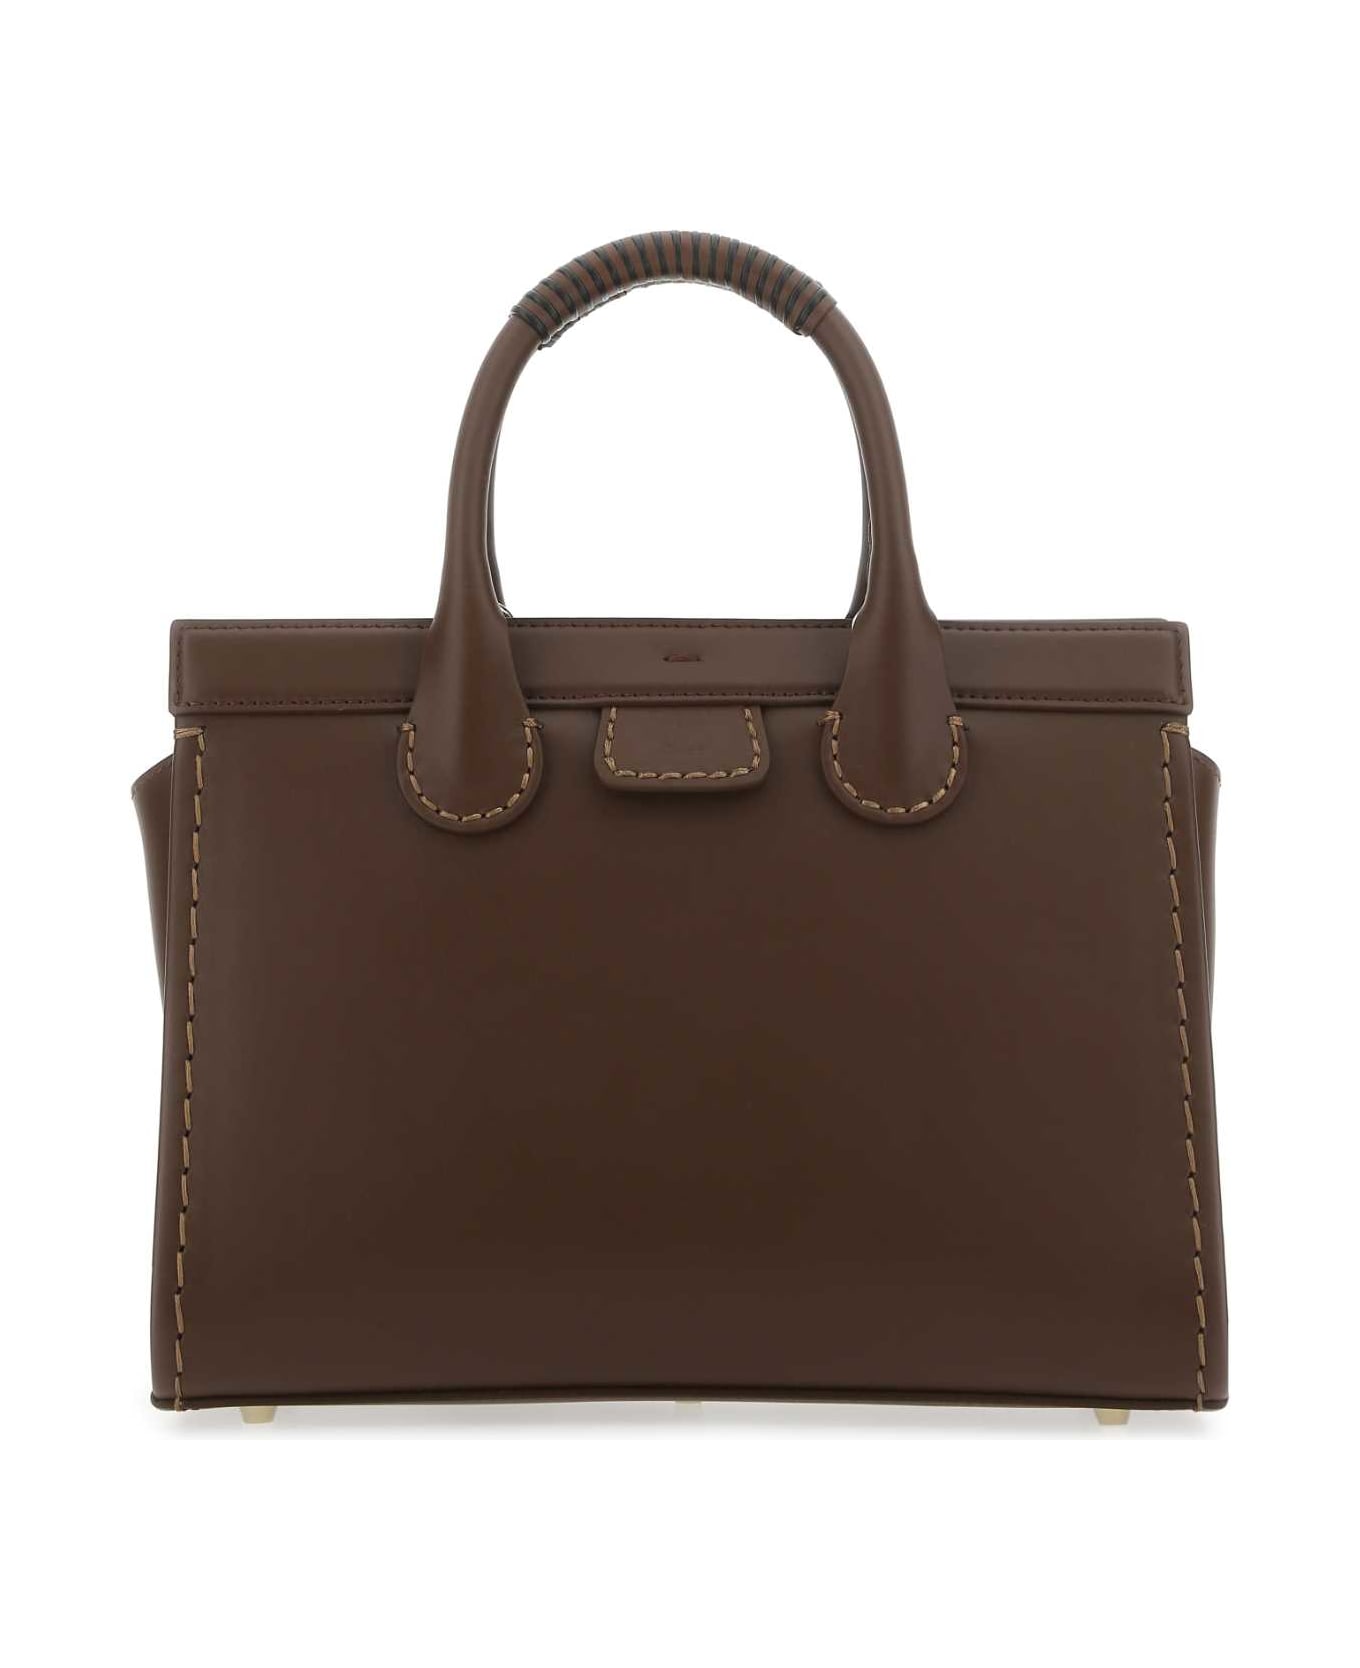 Chloé Brown Leather Medium Edith Handbag - 28A